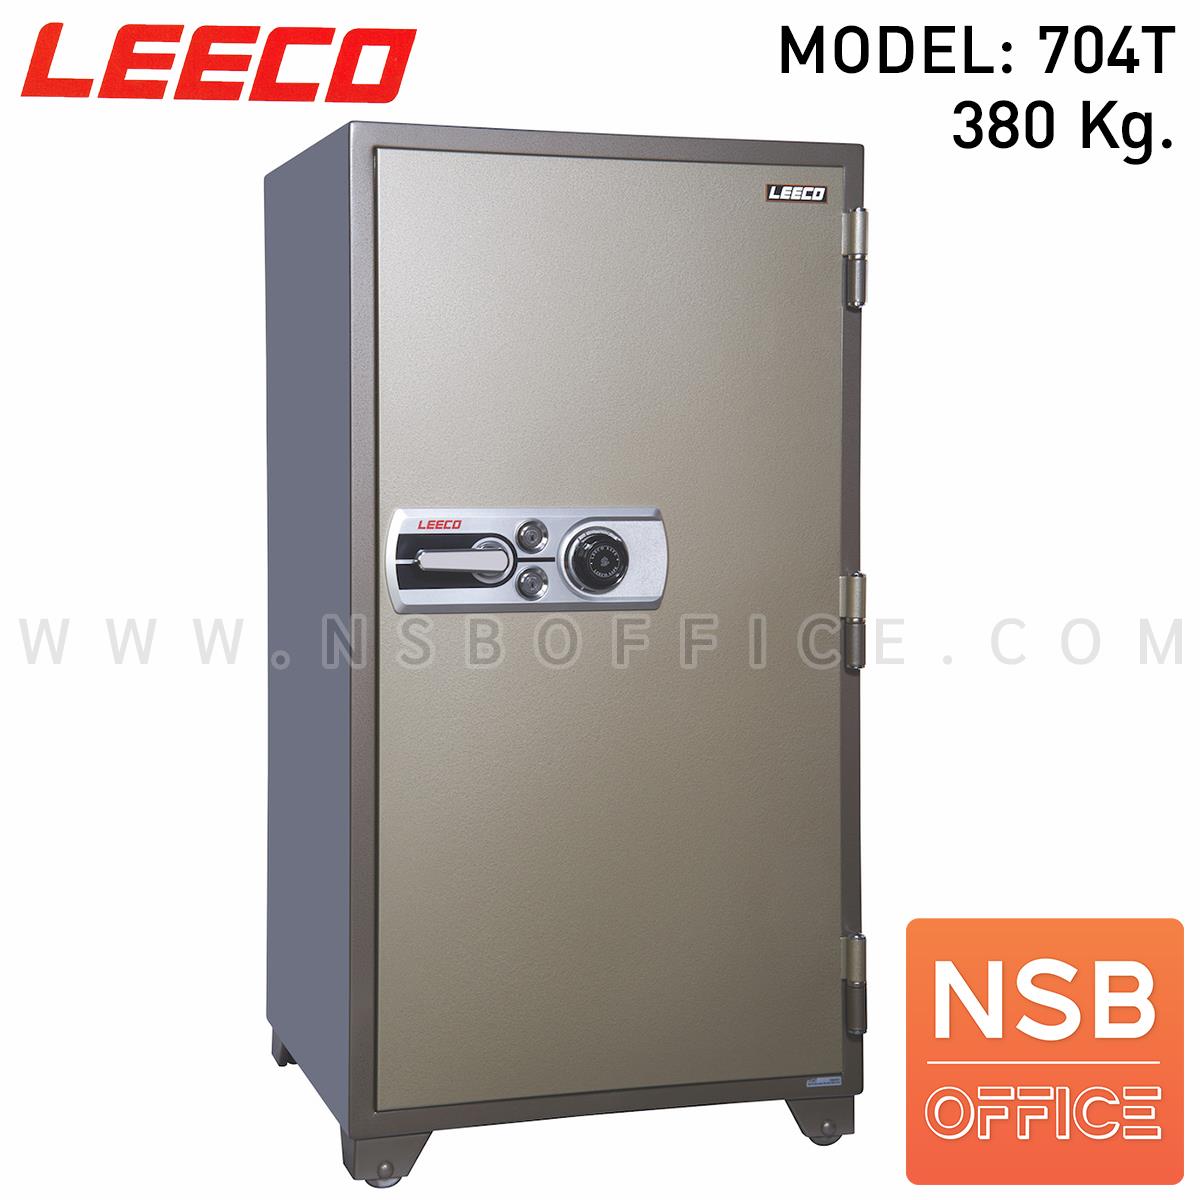 F02A035:ตู้เซฟนิรภัย 380 กก. ลีโก้ รุ่น LEECO-704T มี 2 กุญแจ 1 รหัส (เปลี่ยนรหัสได้)   